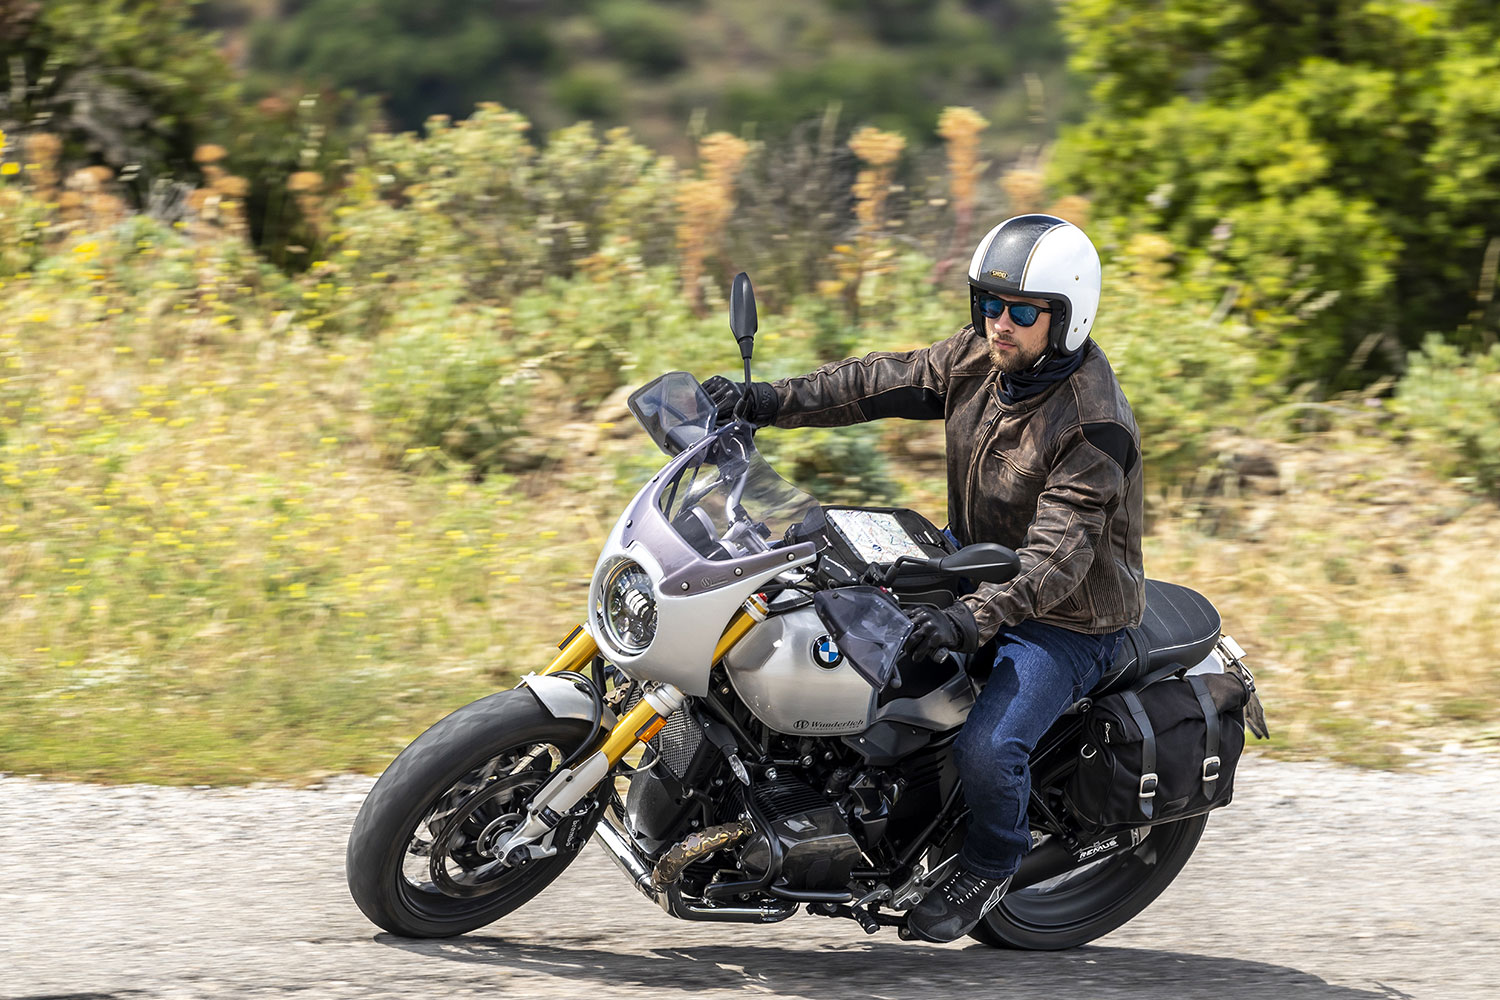 Man riding motorbike wearing roadster leather jacket